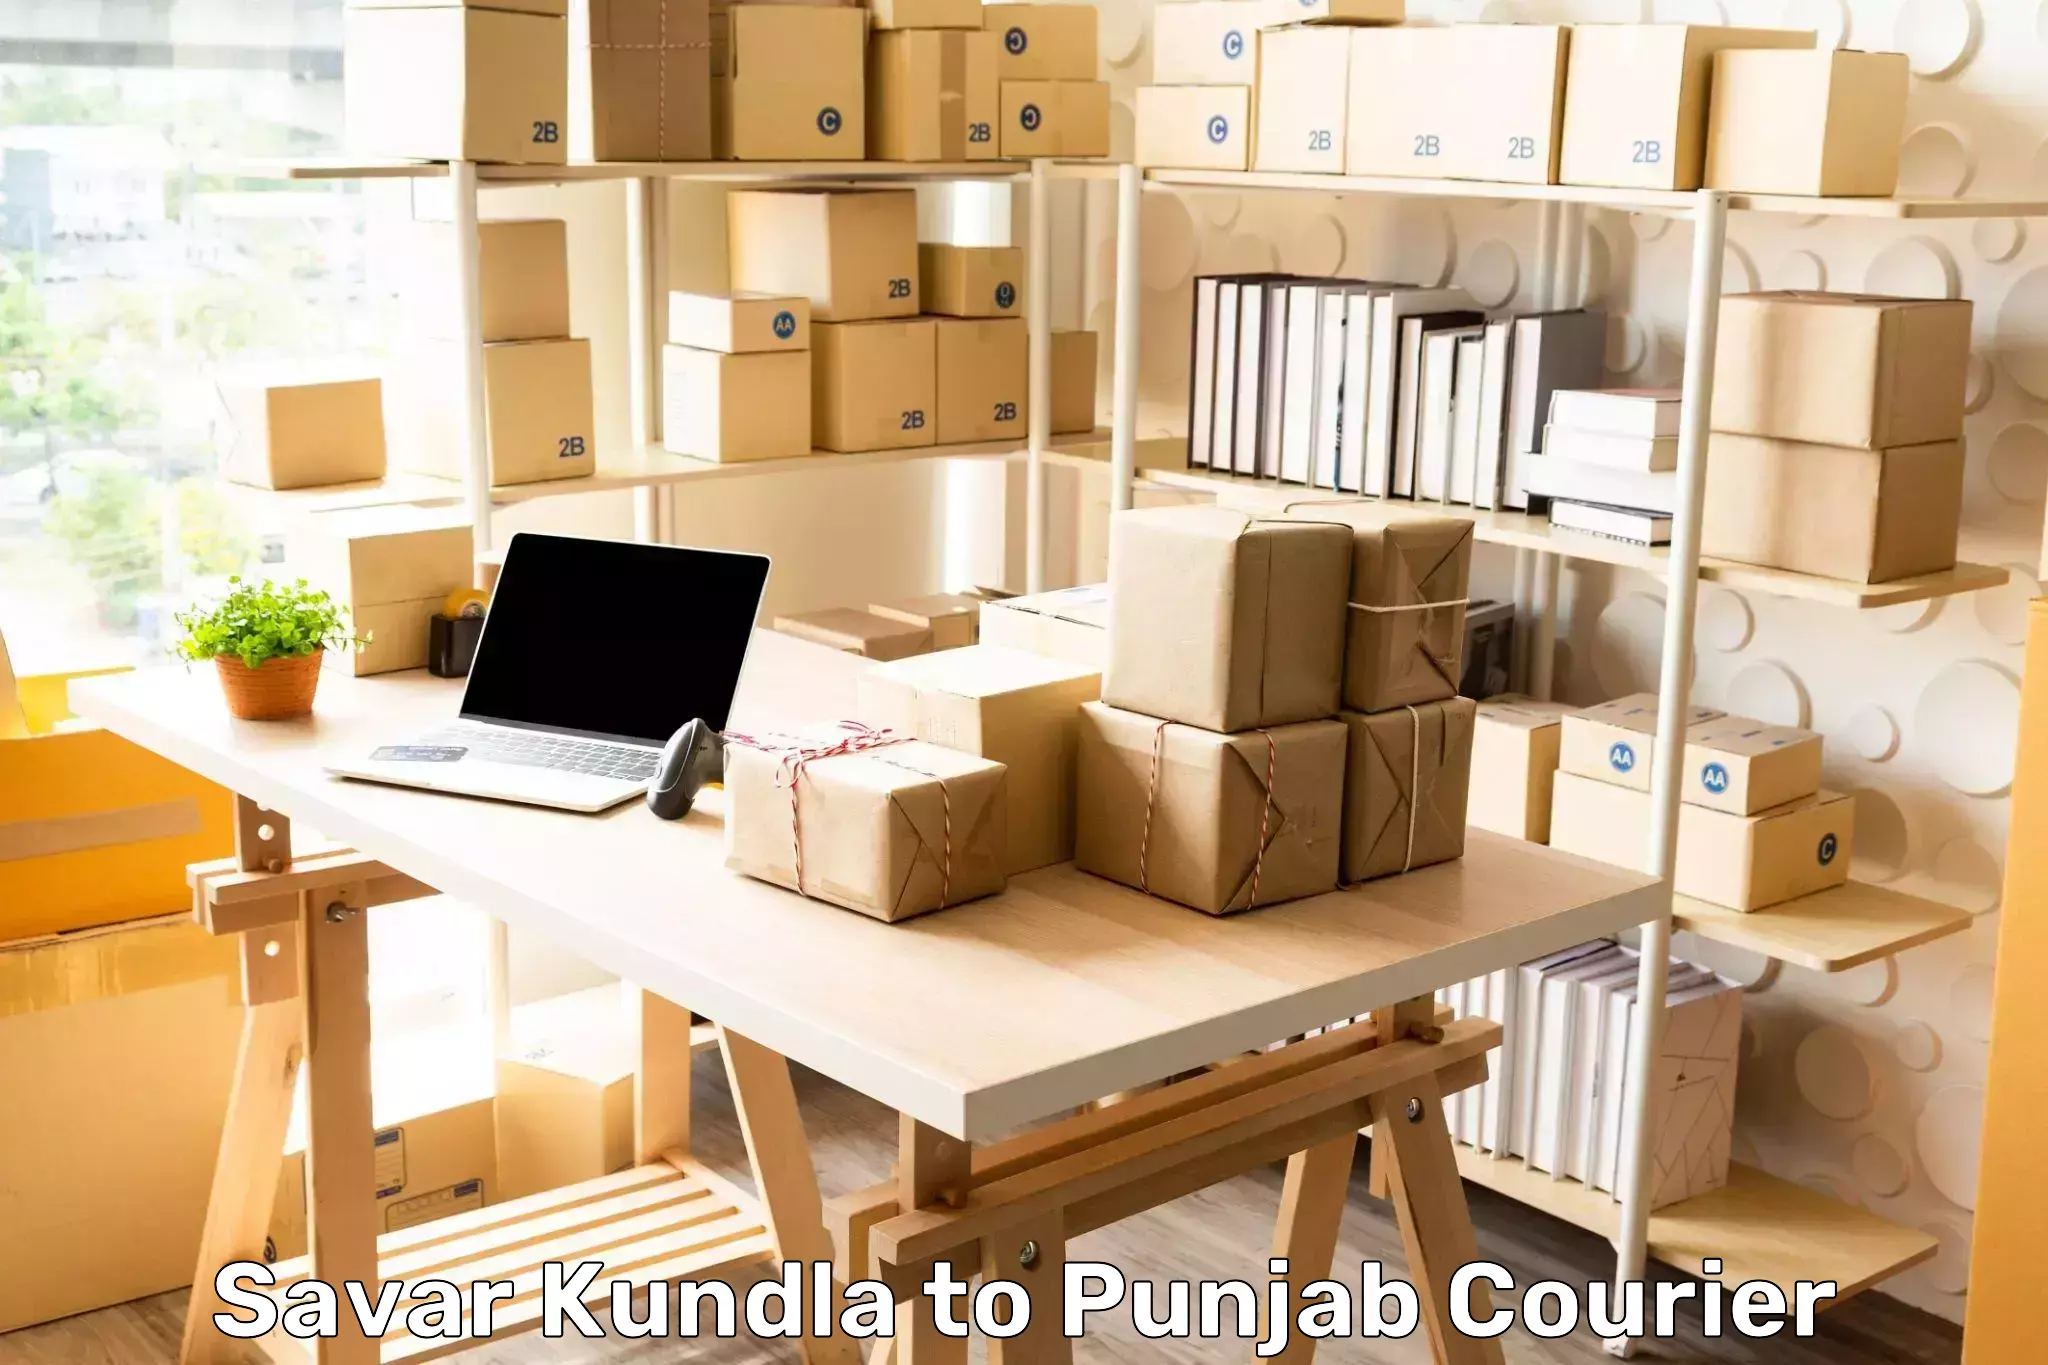 Courier insurance Savar Kundla to Khanna